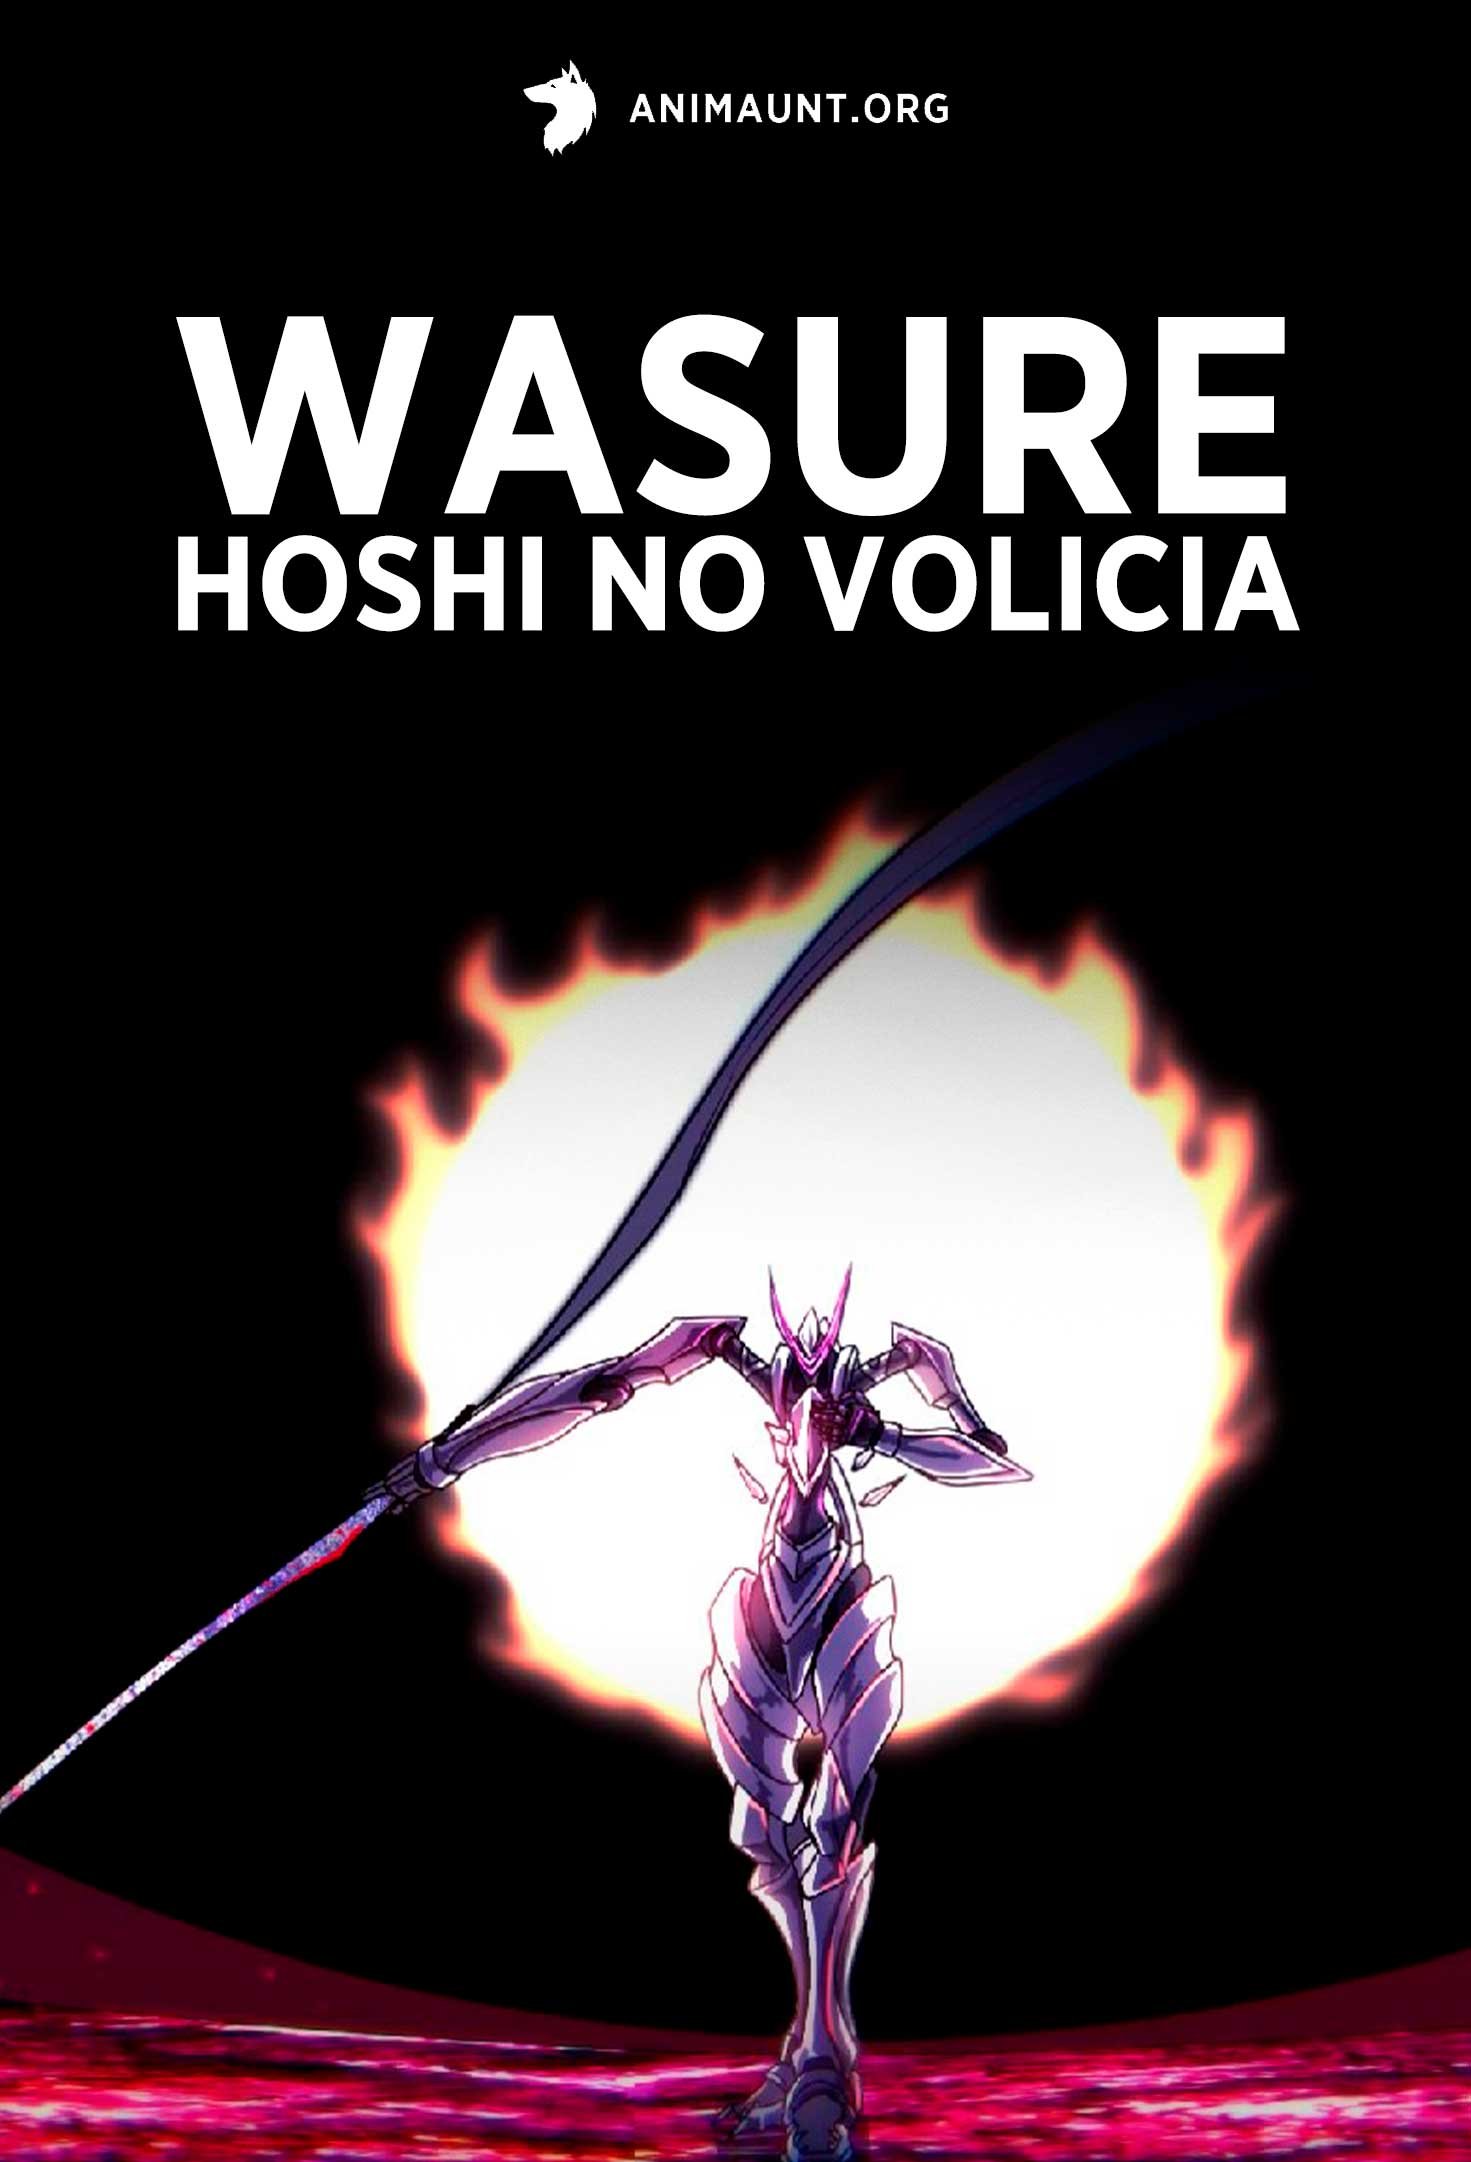 Wasure Hoshi no Volicia